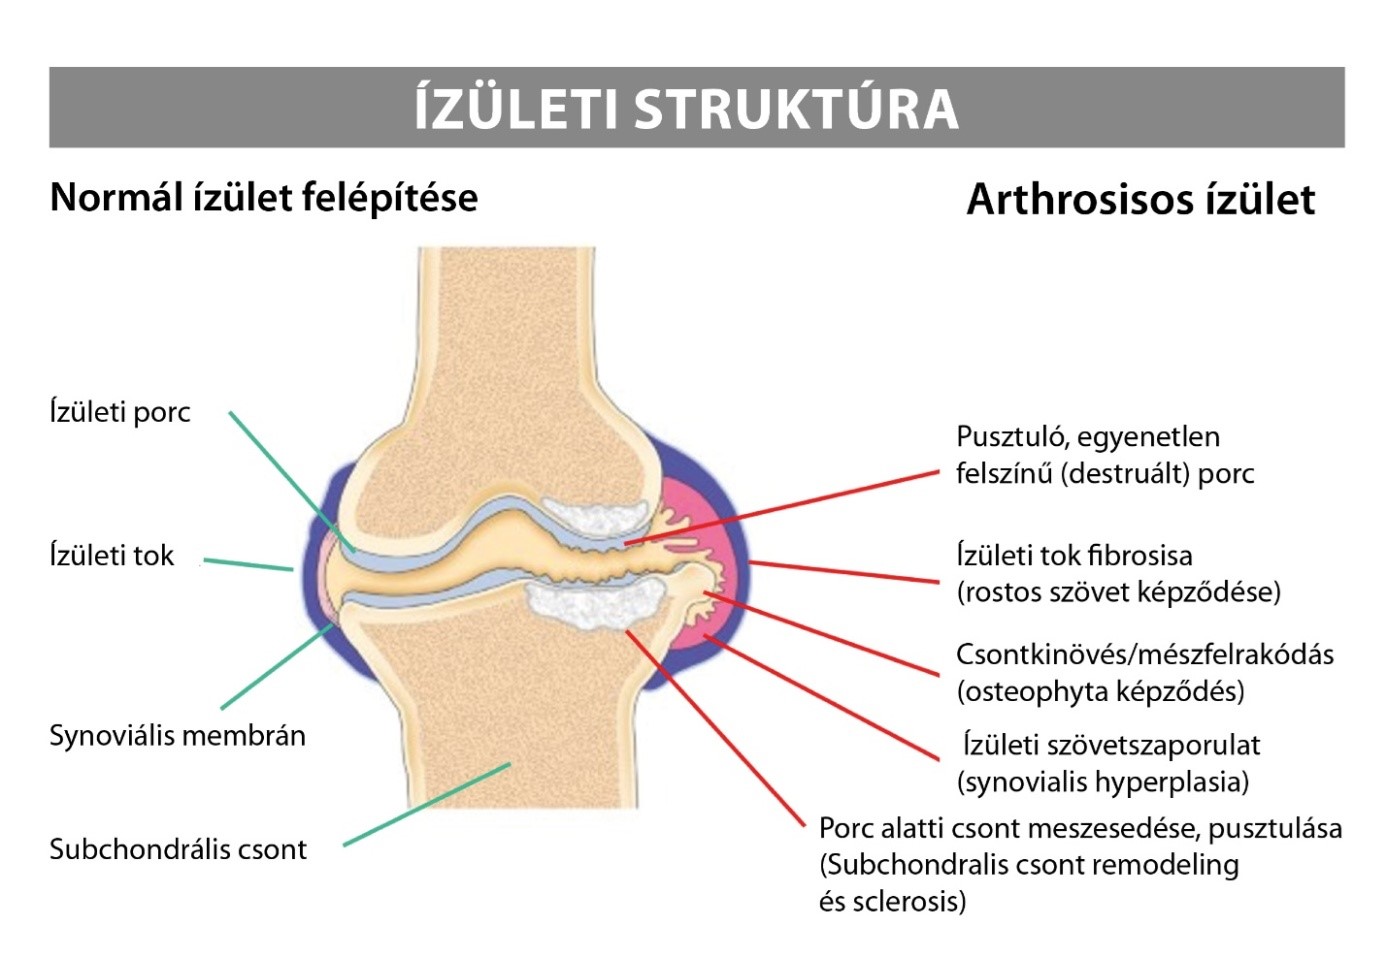 az artrózis kezelési komplikációkat okoz